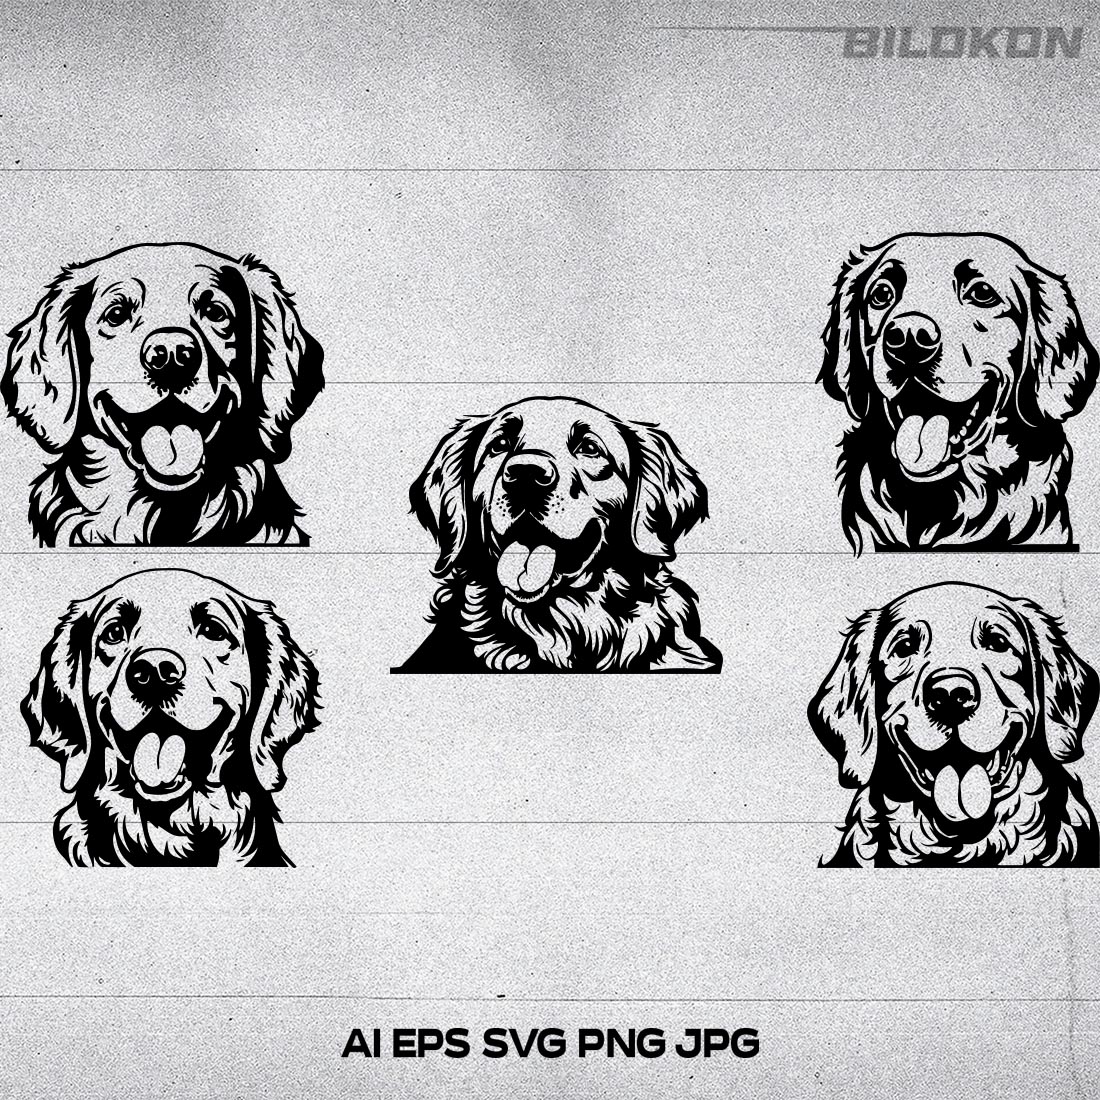 Golden retriever head dog Vector illustration SVG Bundle cover image.